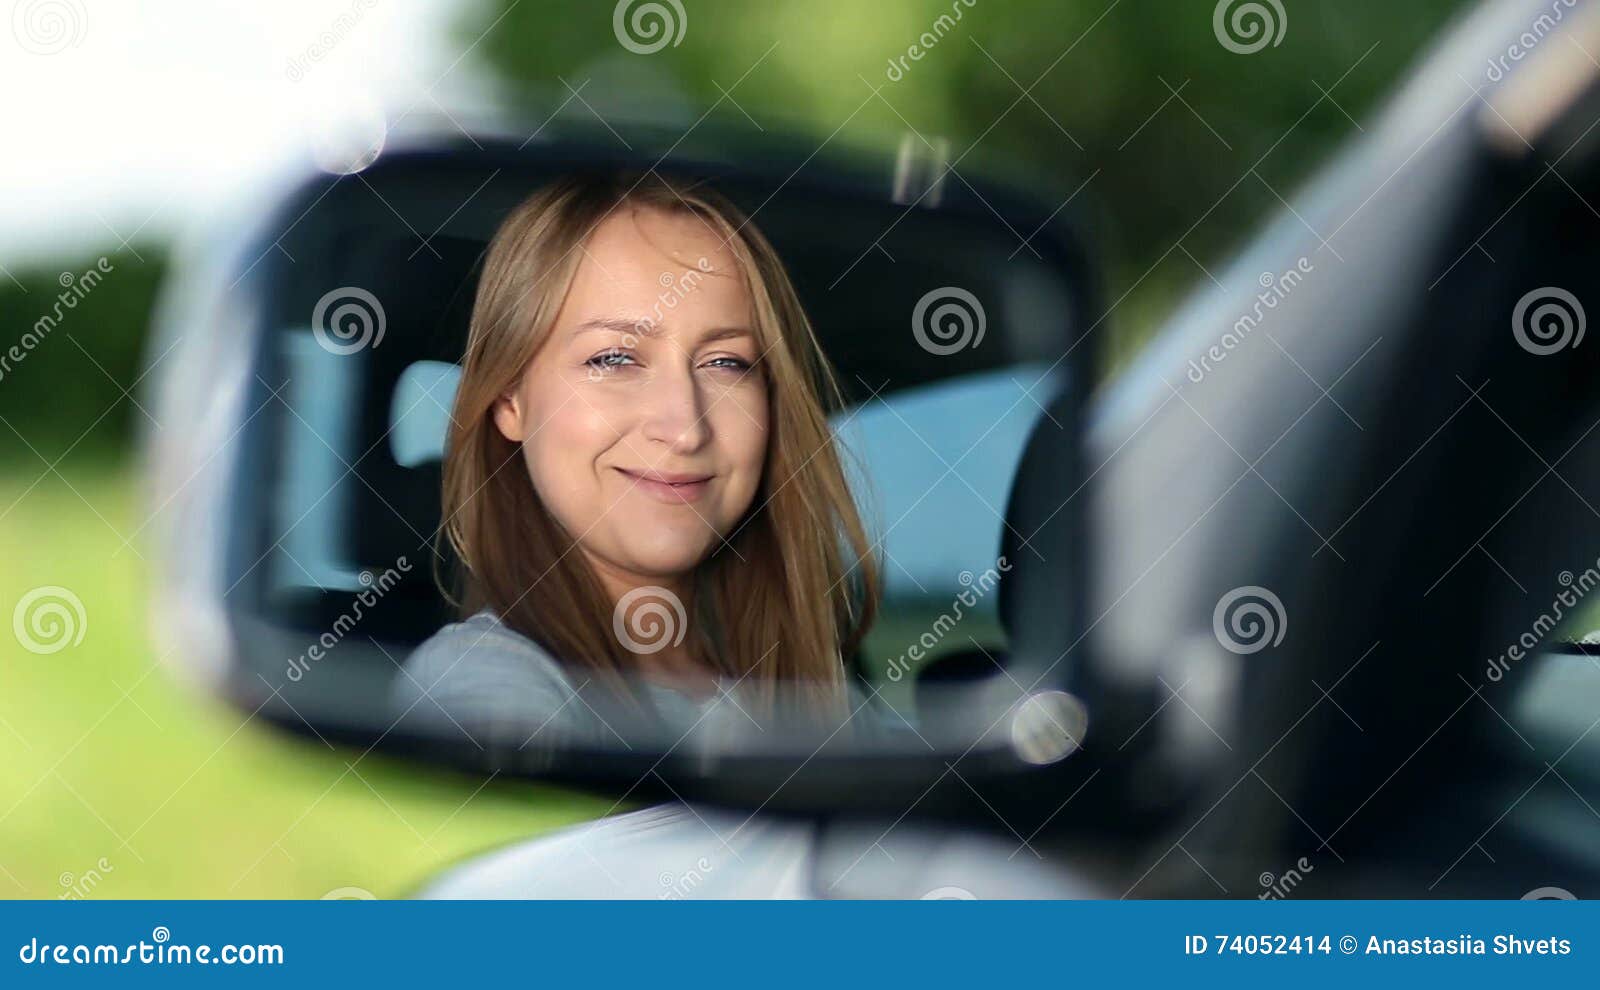 Водитель смотрит в зеркало. Молодая девушка водитель. Old photo girl looking at the car. Looking for Drivers.